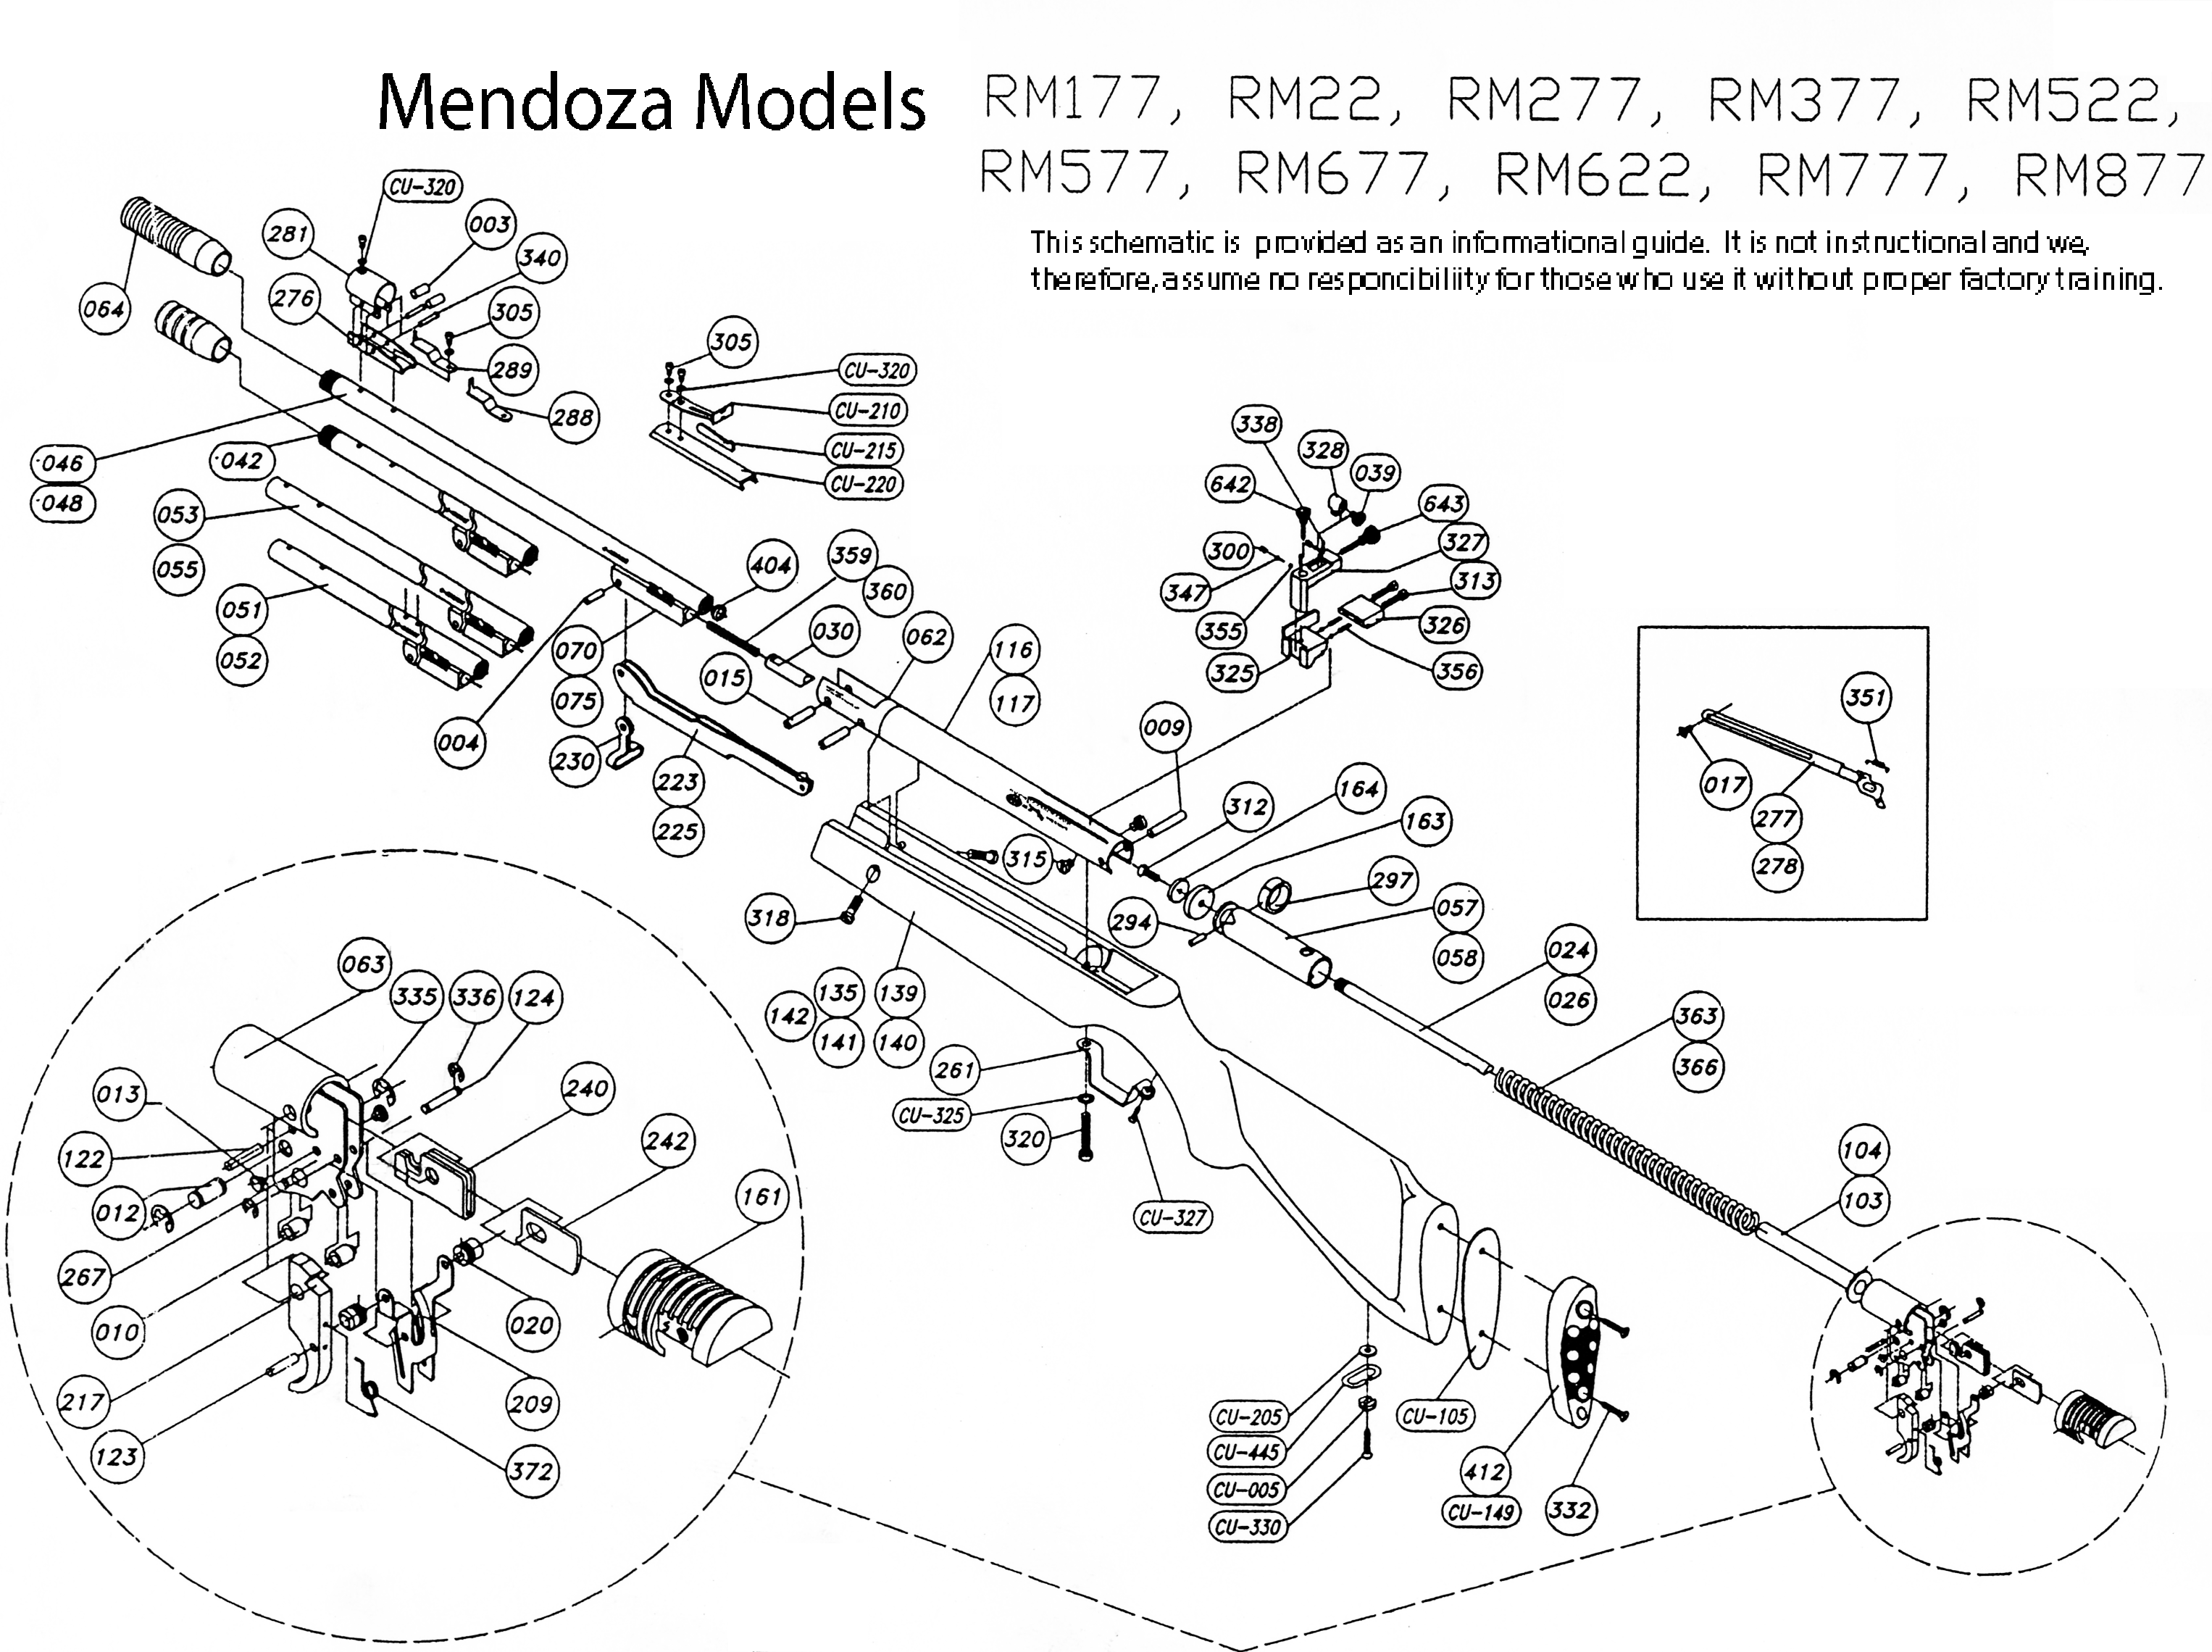 RM877 Schematic